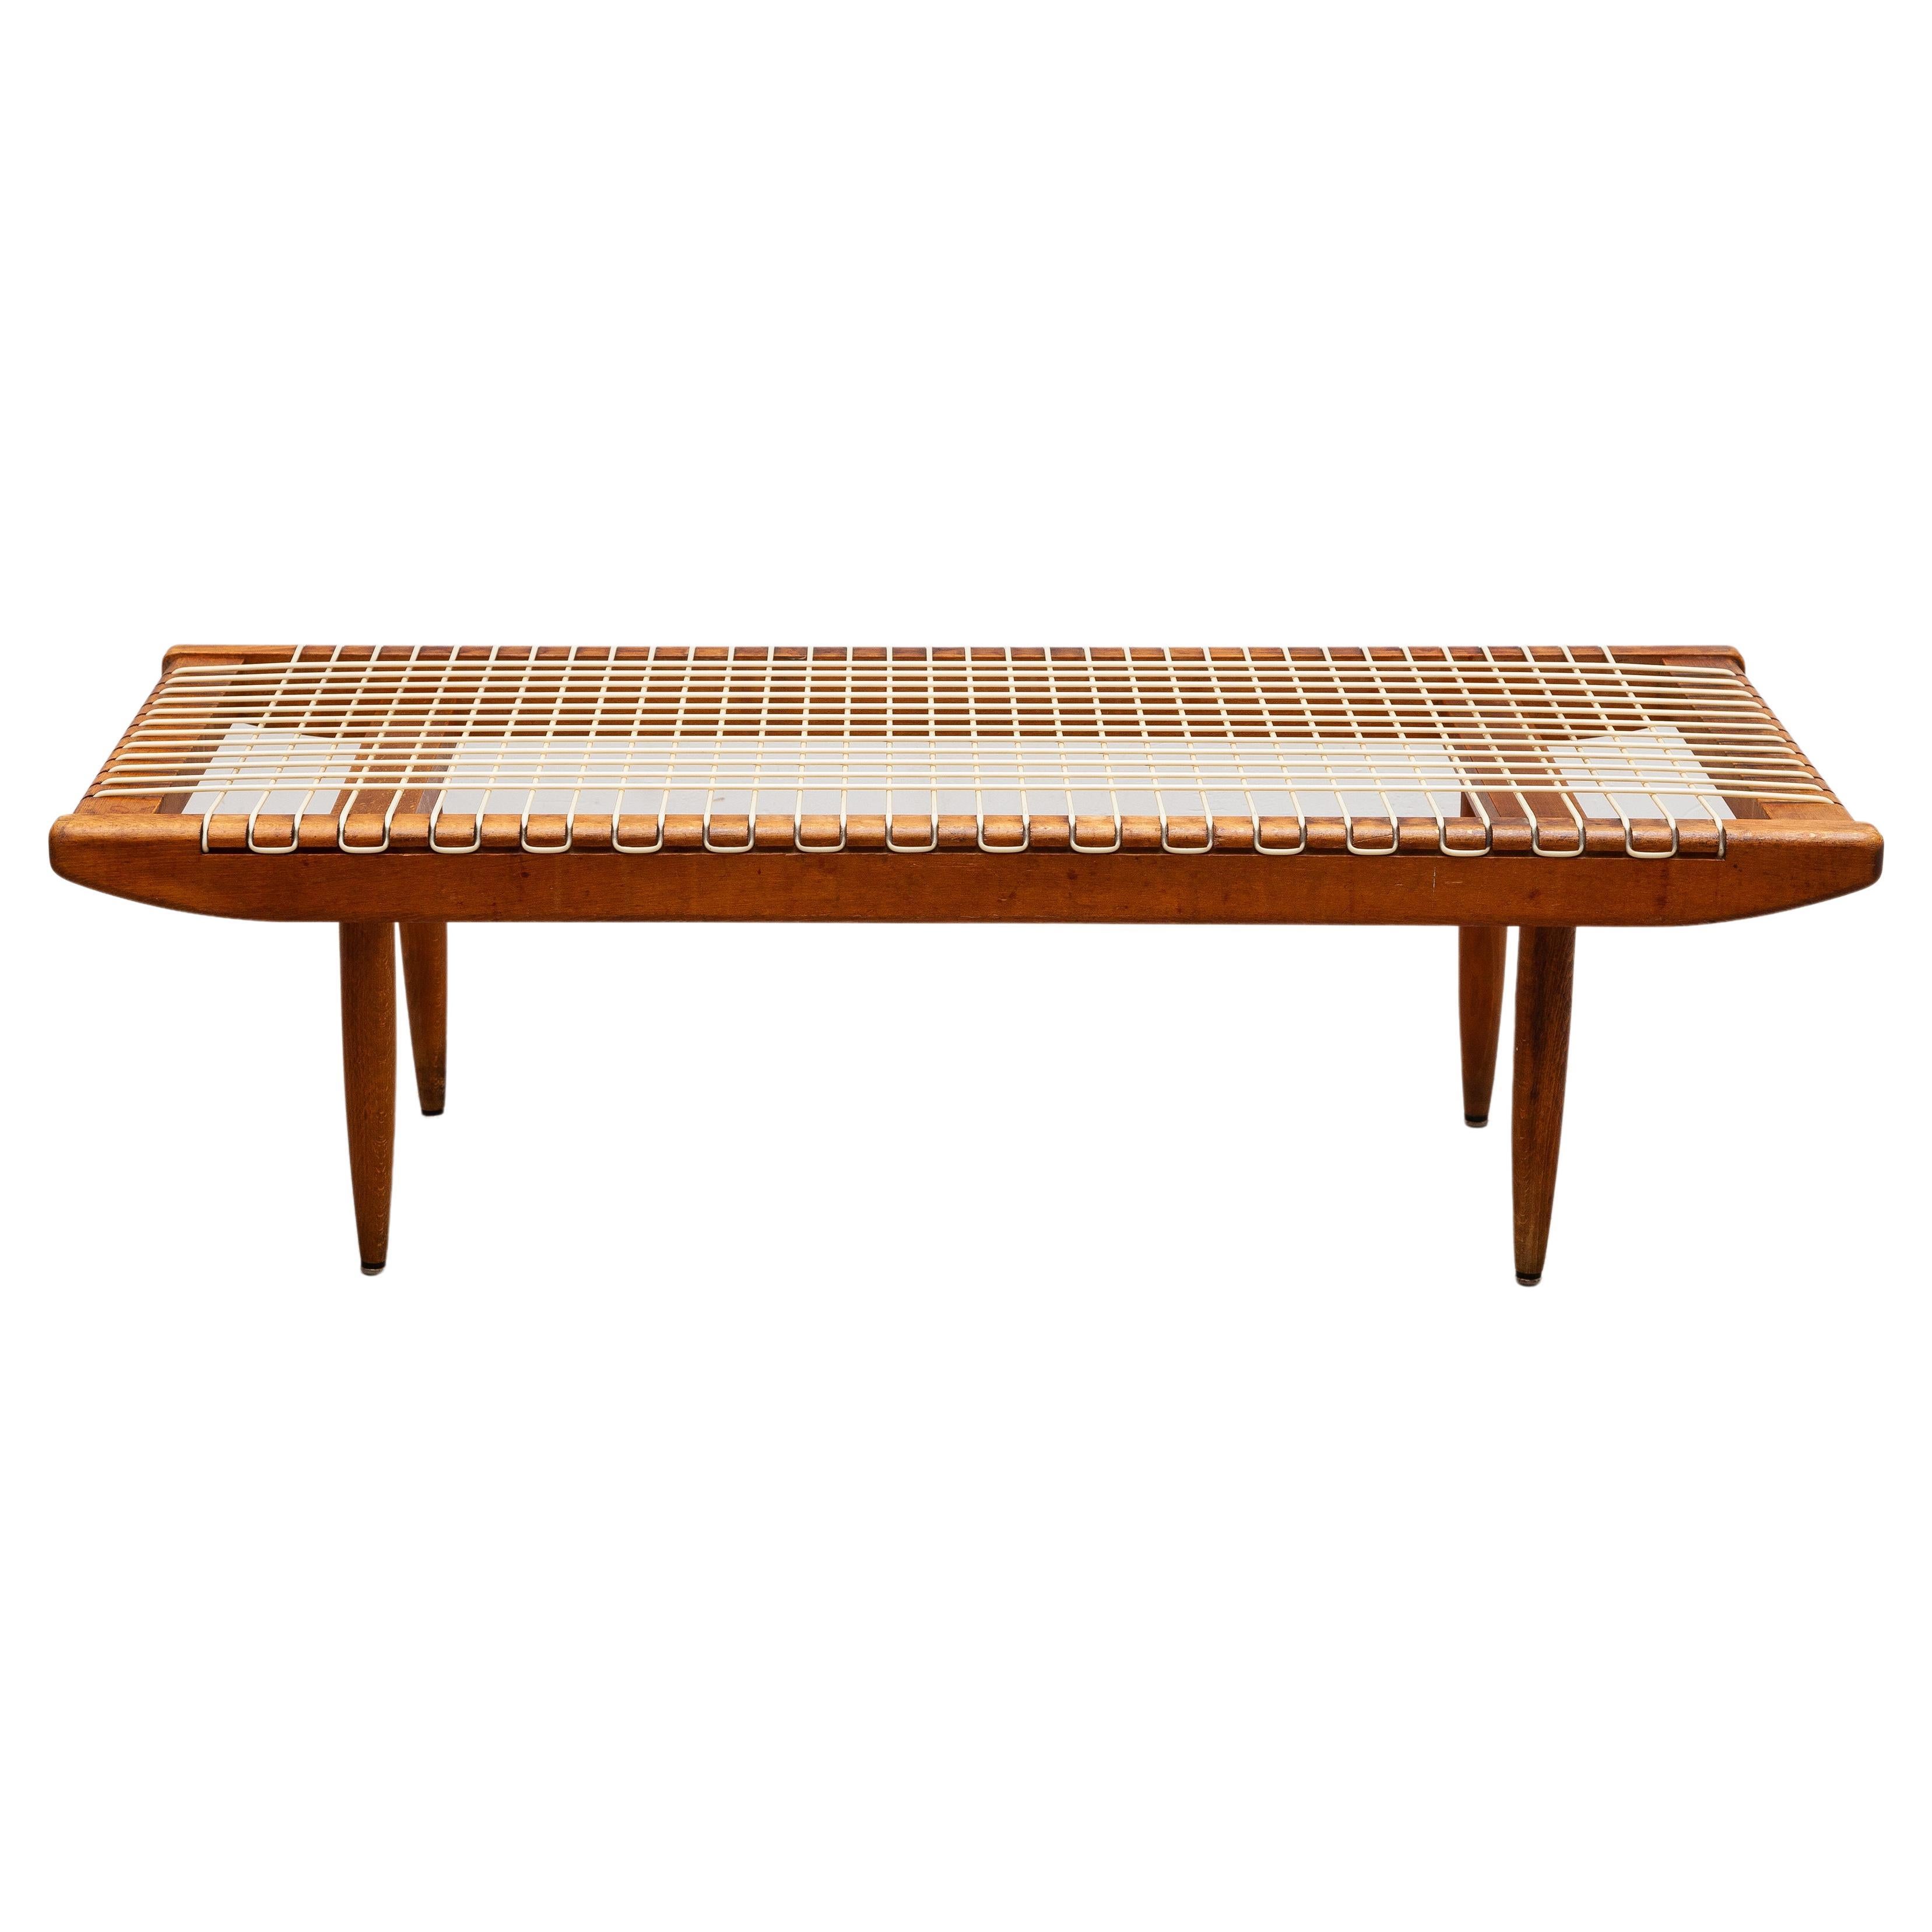 Une rare table basse décorative originale conçue par Georges Tigien pour Pradera dans les années 1950, France. Formé de teck massif et d'un câble métallique très résistant. La table basse est très décorative et en état original. La table peut servir